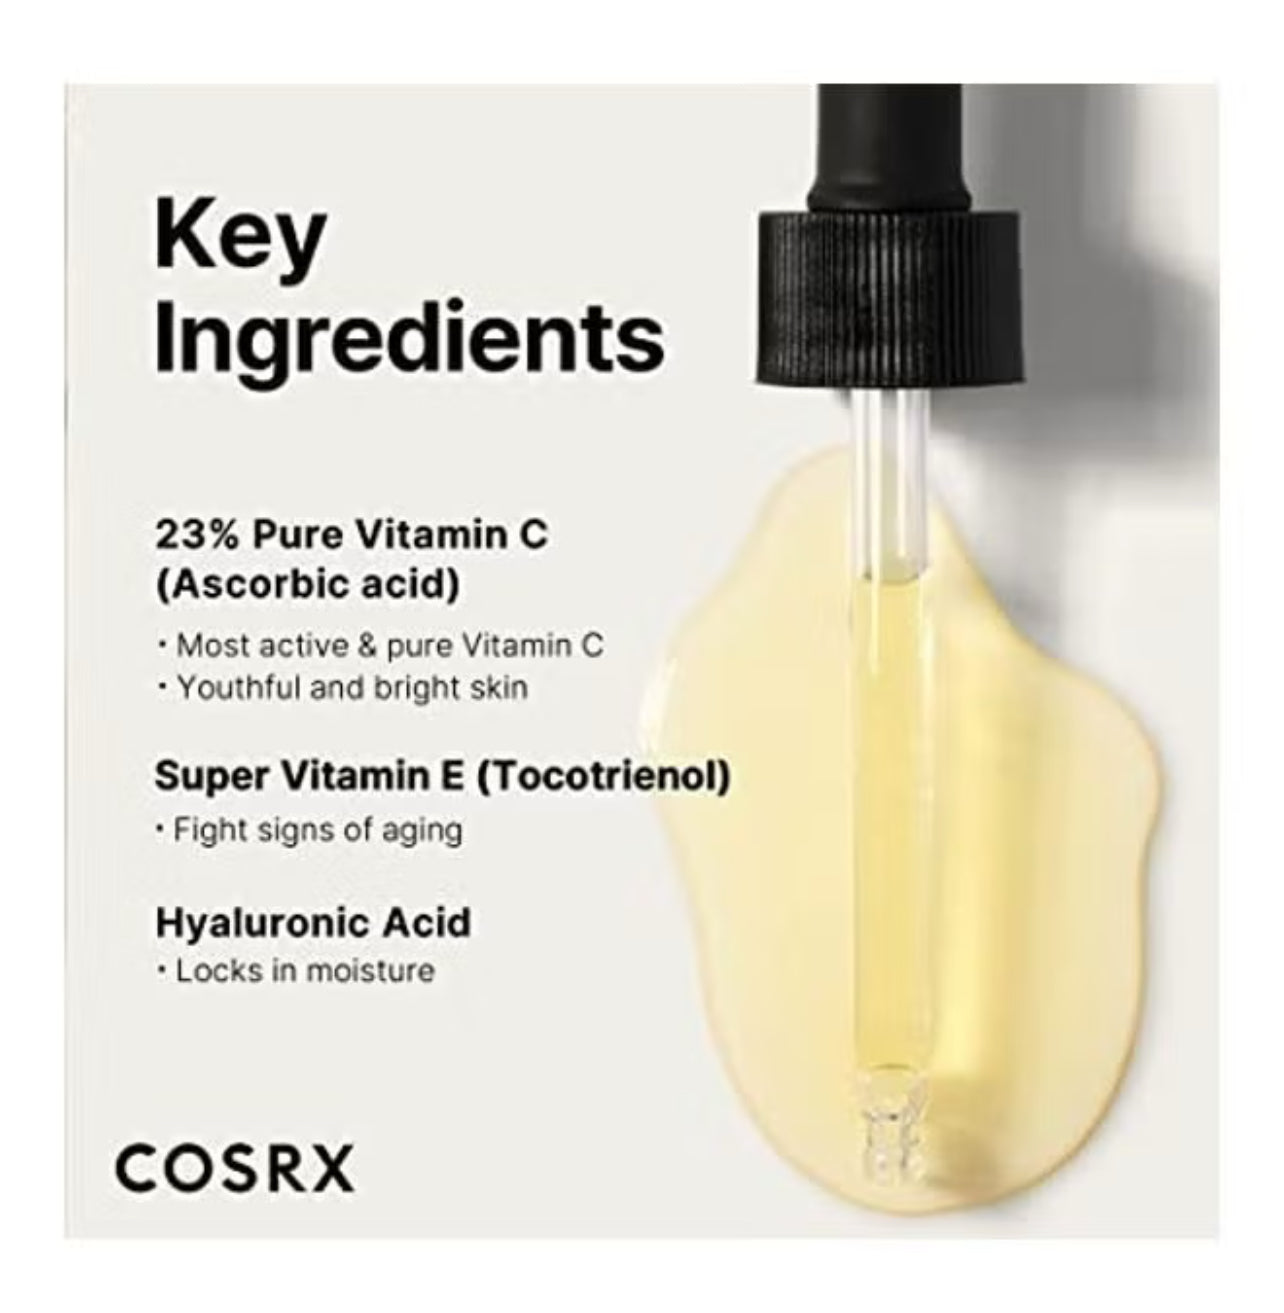 Cosrx The Vitamin C 23 Serum 20gr – Brightening Vitamin C Serum